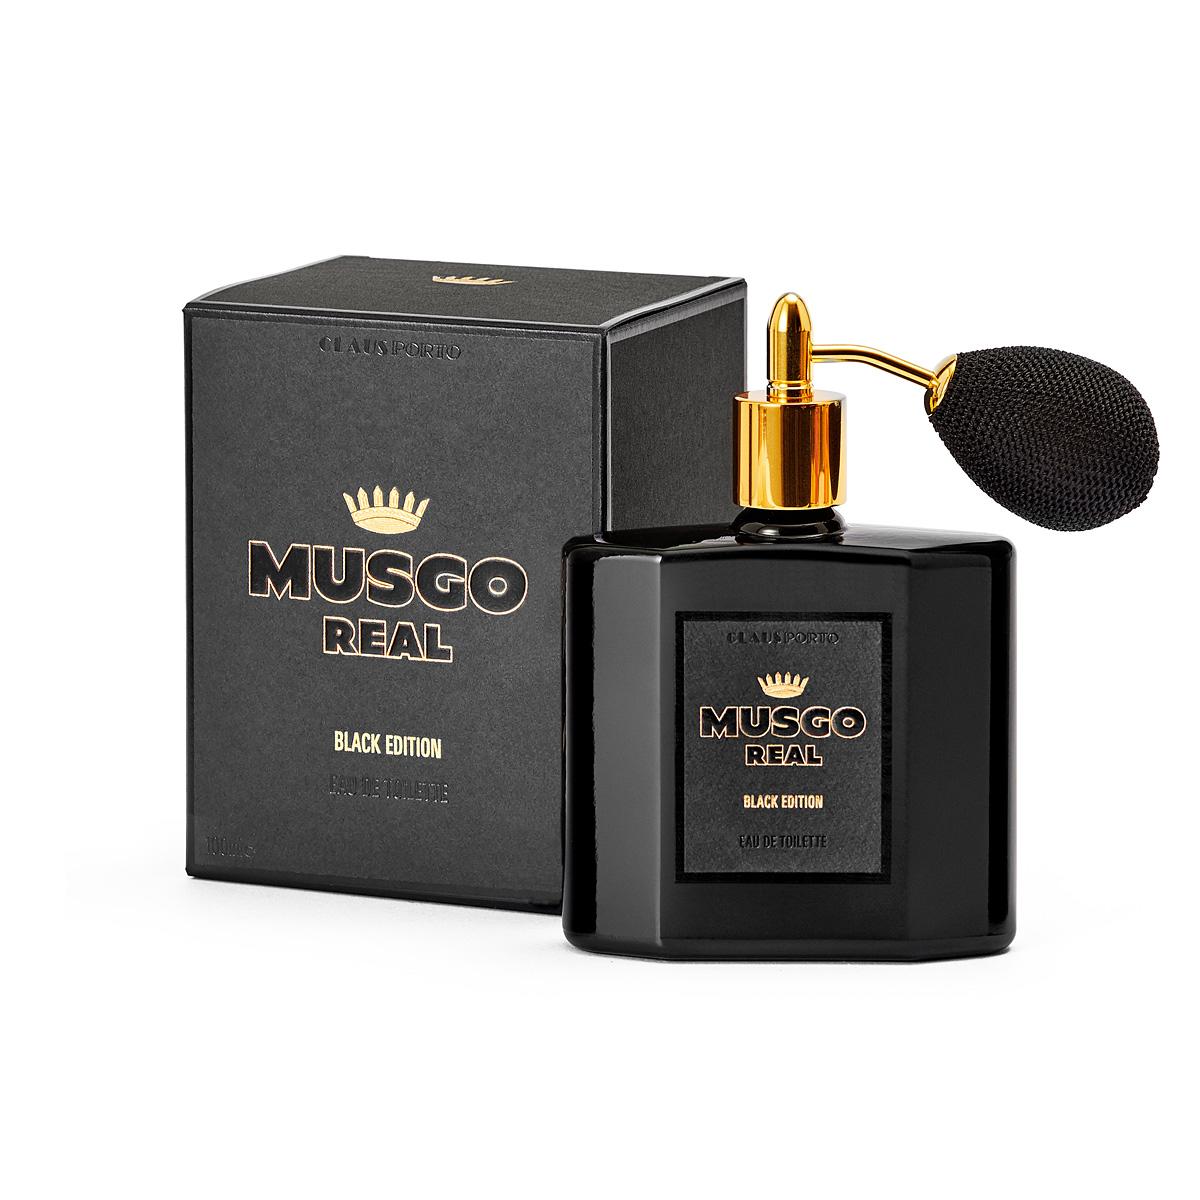 Musgo Real Black Edition Eau de Toilette 100ml